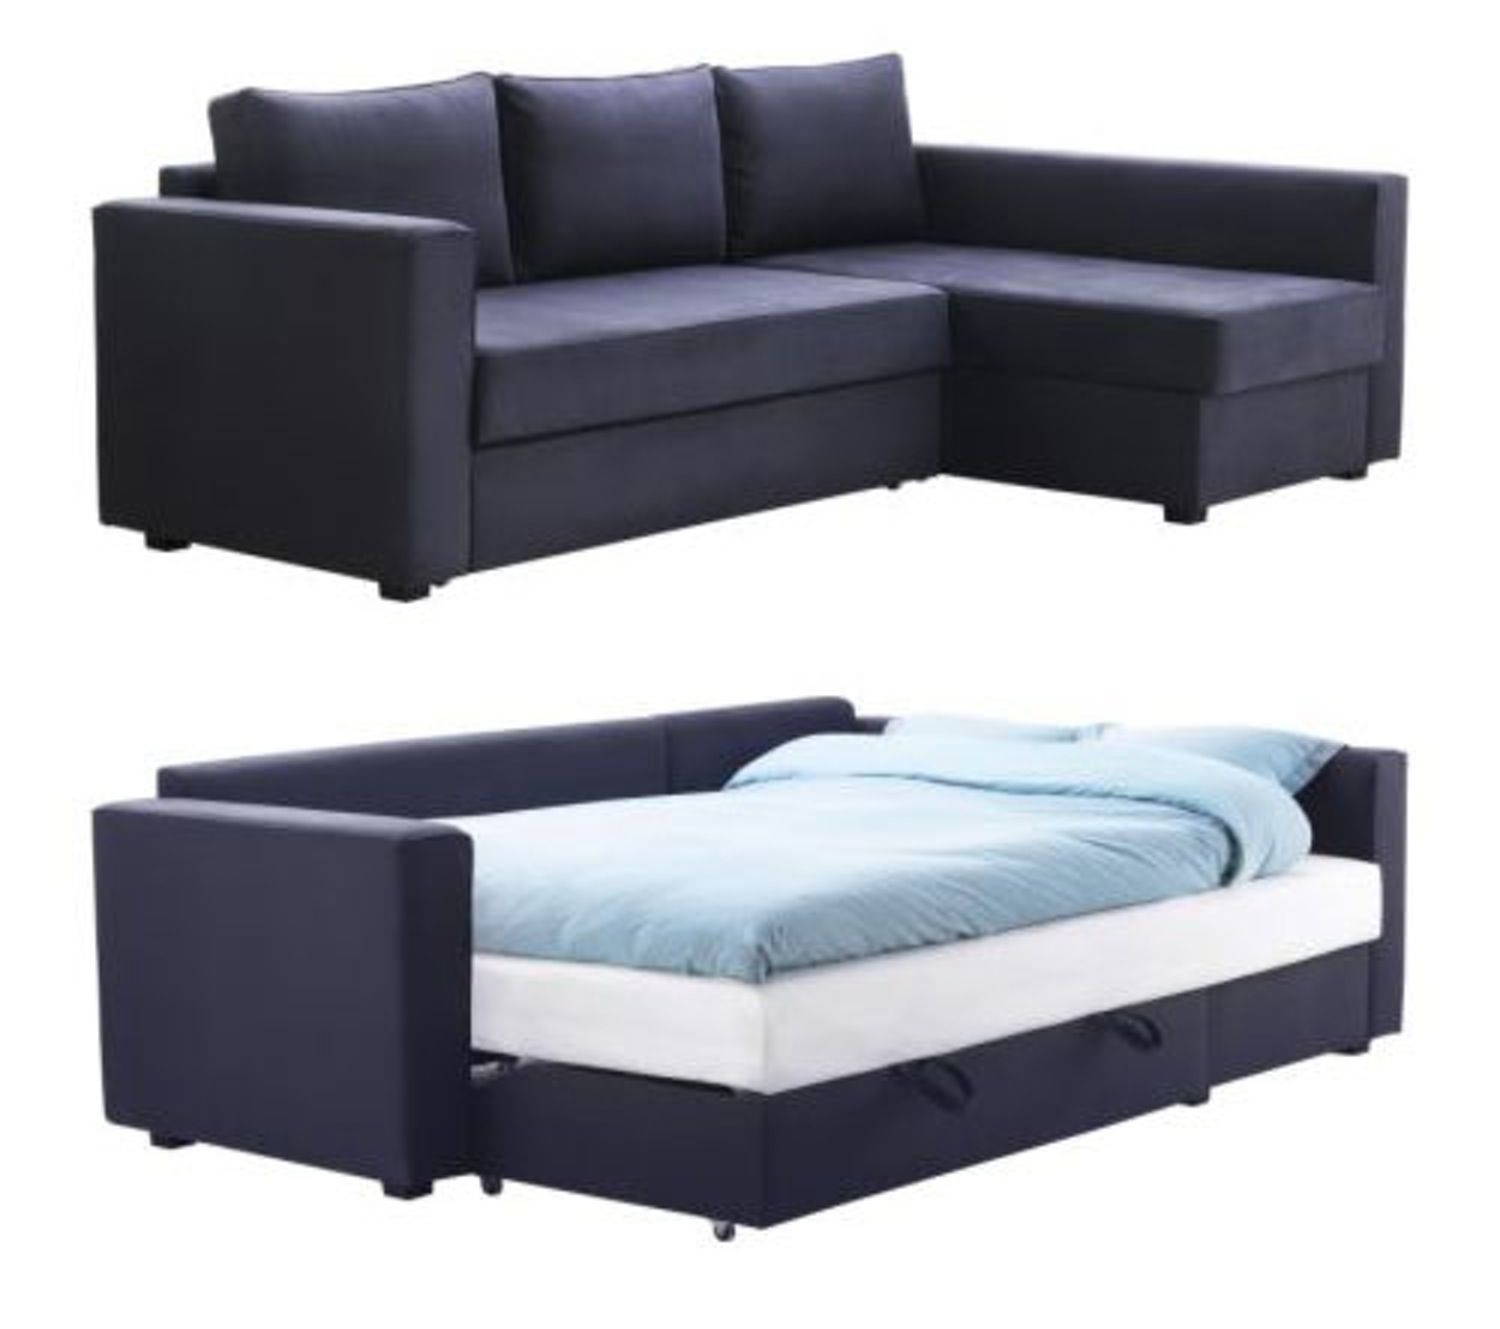 Modular sleeper sofa 1